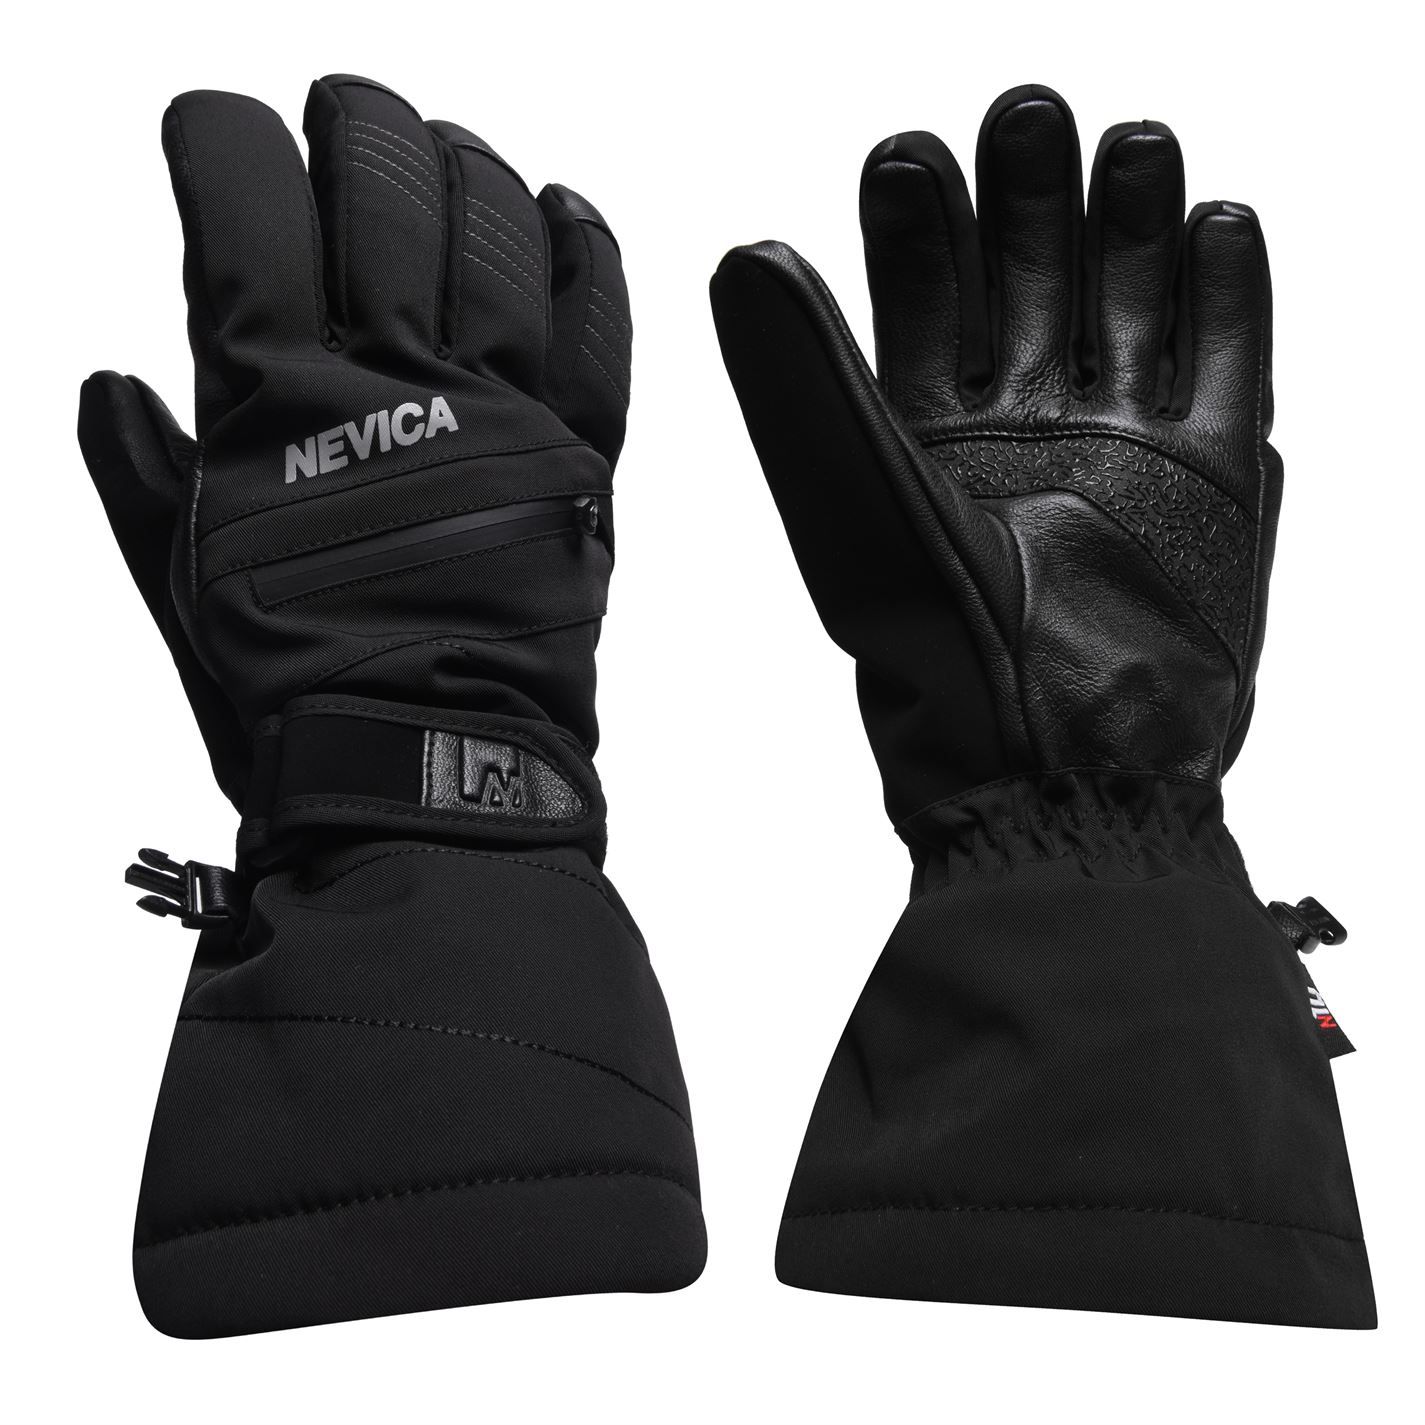 pánské rukavice NEVICA - BLACK - 2XL